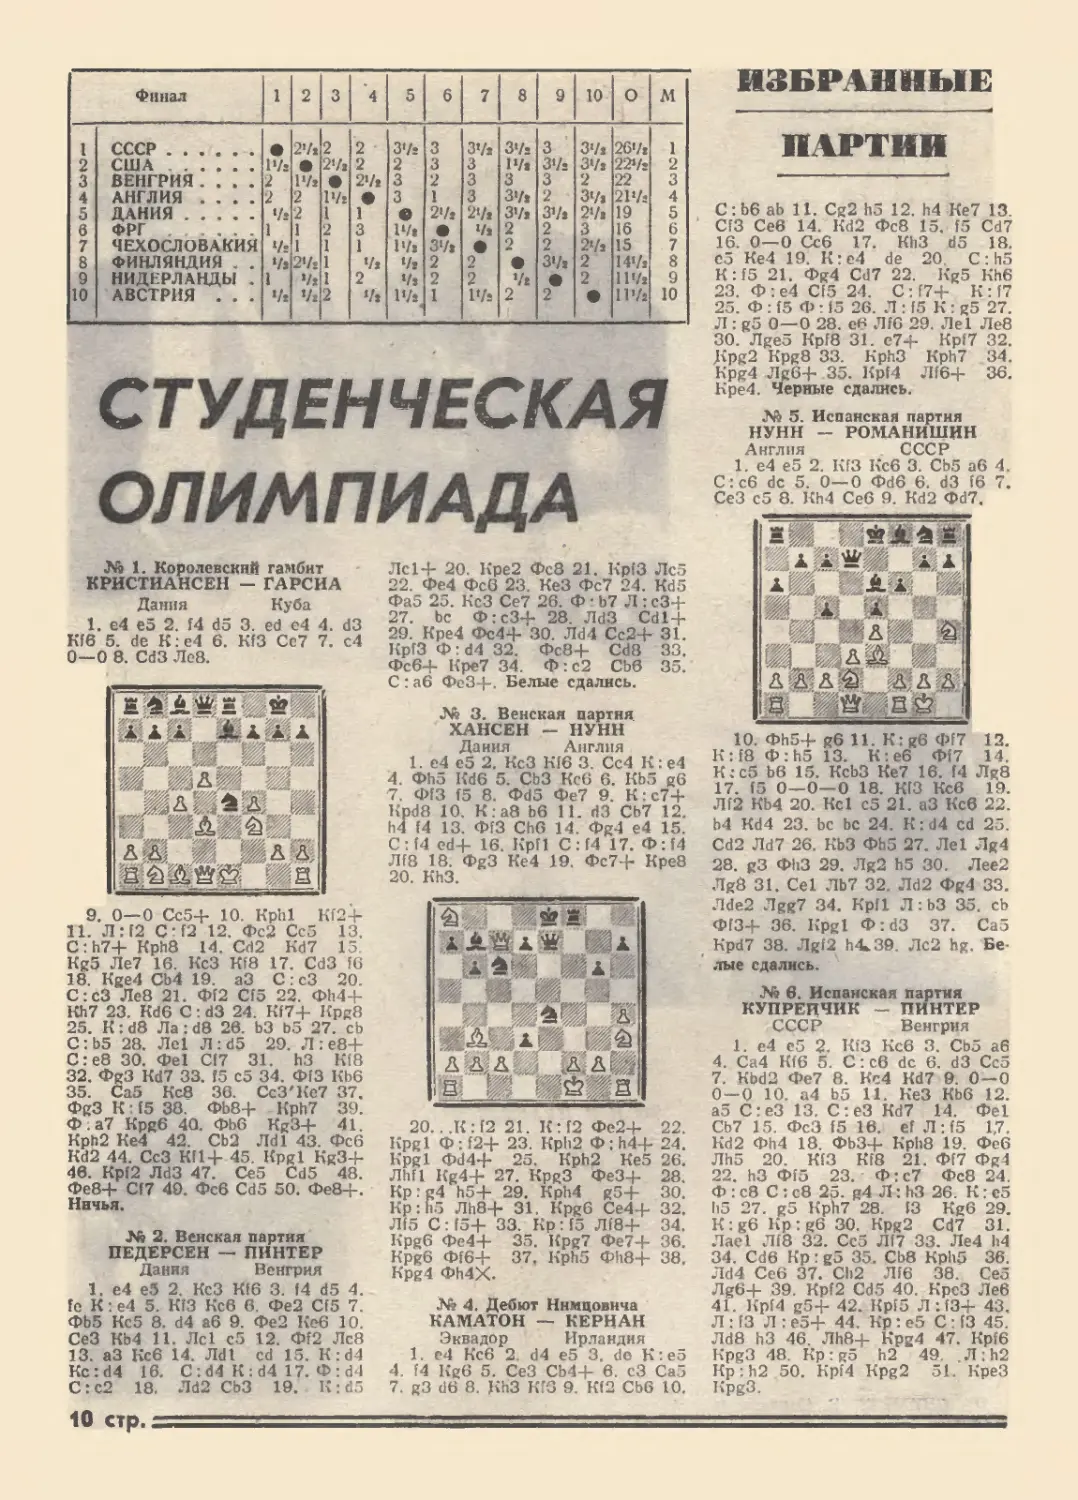 Студенческая олимпиада, 1974 г.
Избранные партии